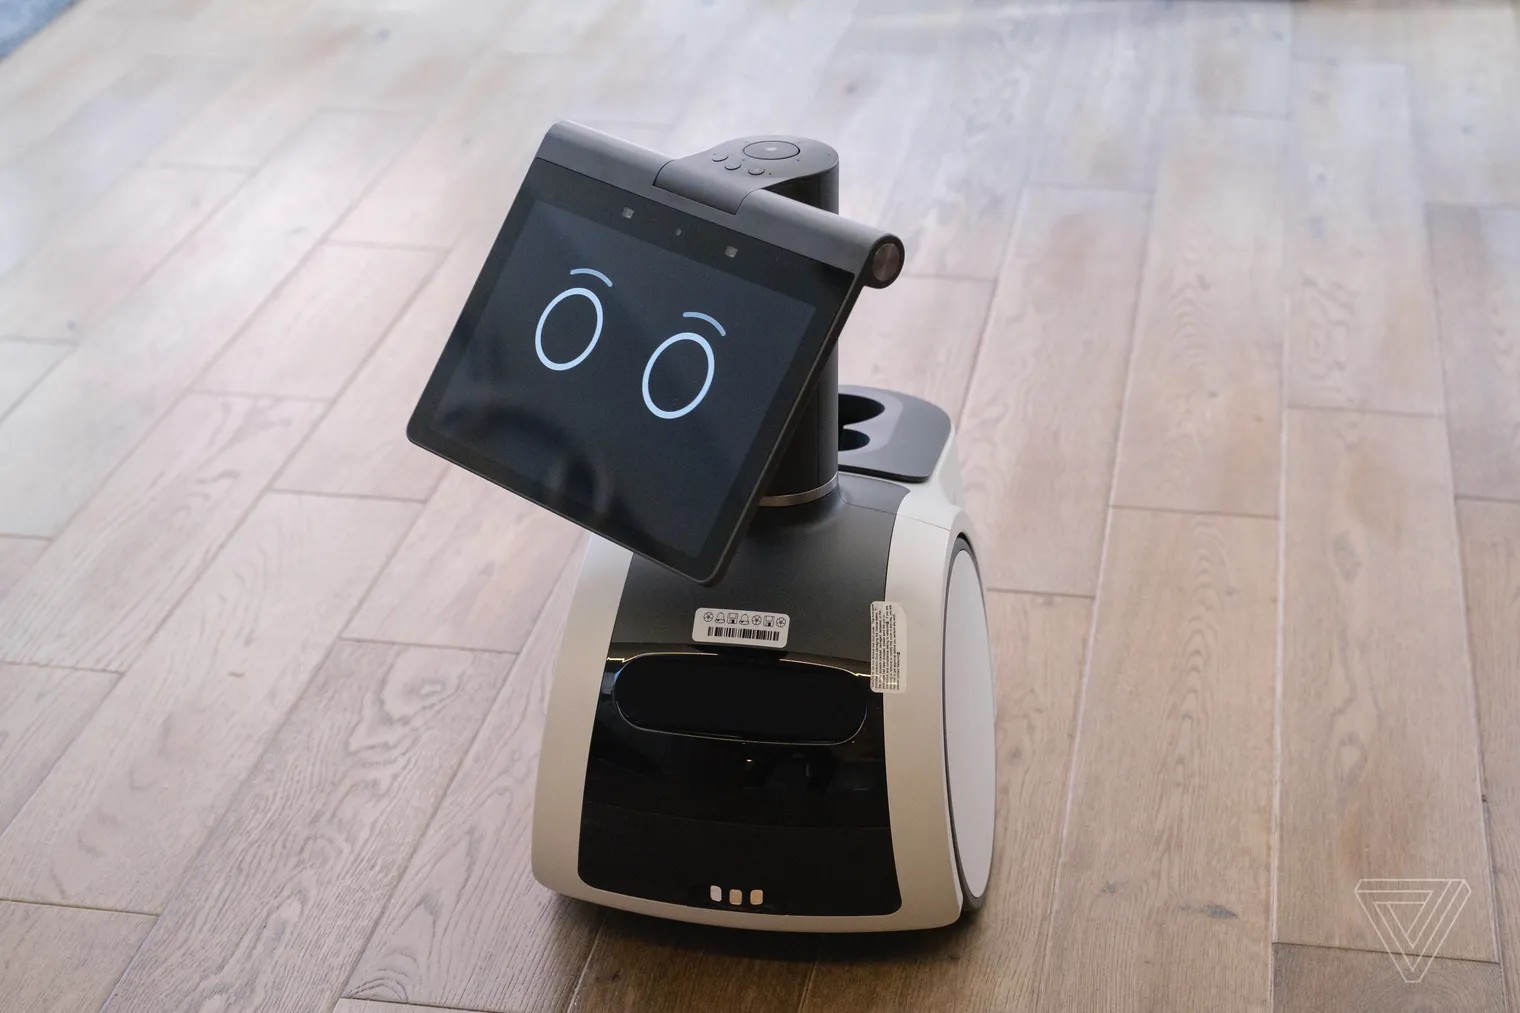 two weeks Cilia Filth Amazon presenta il suo robot: si chiama Astro. Ecco cosa fa e quanto costa  - HDblog.it